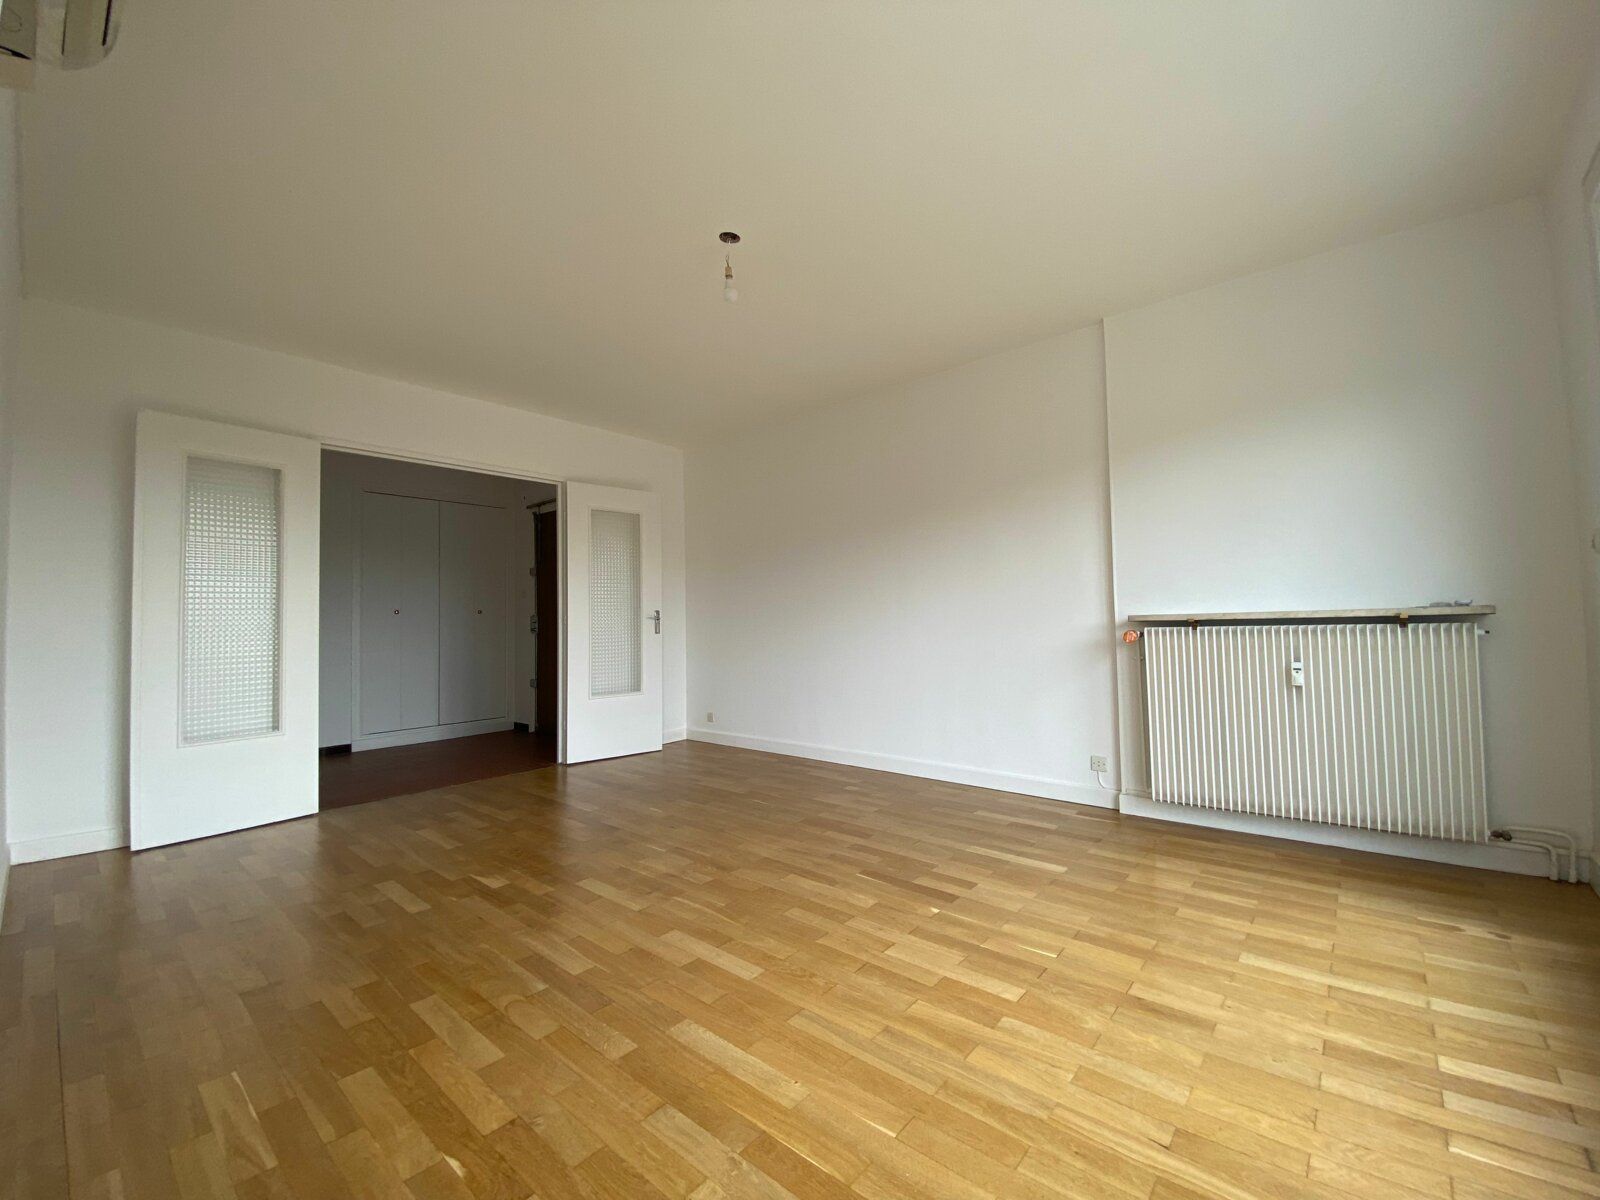 Appartement à vendre 3 68.8m2 à Fontaines-sur-Saône vignette-3